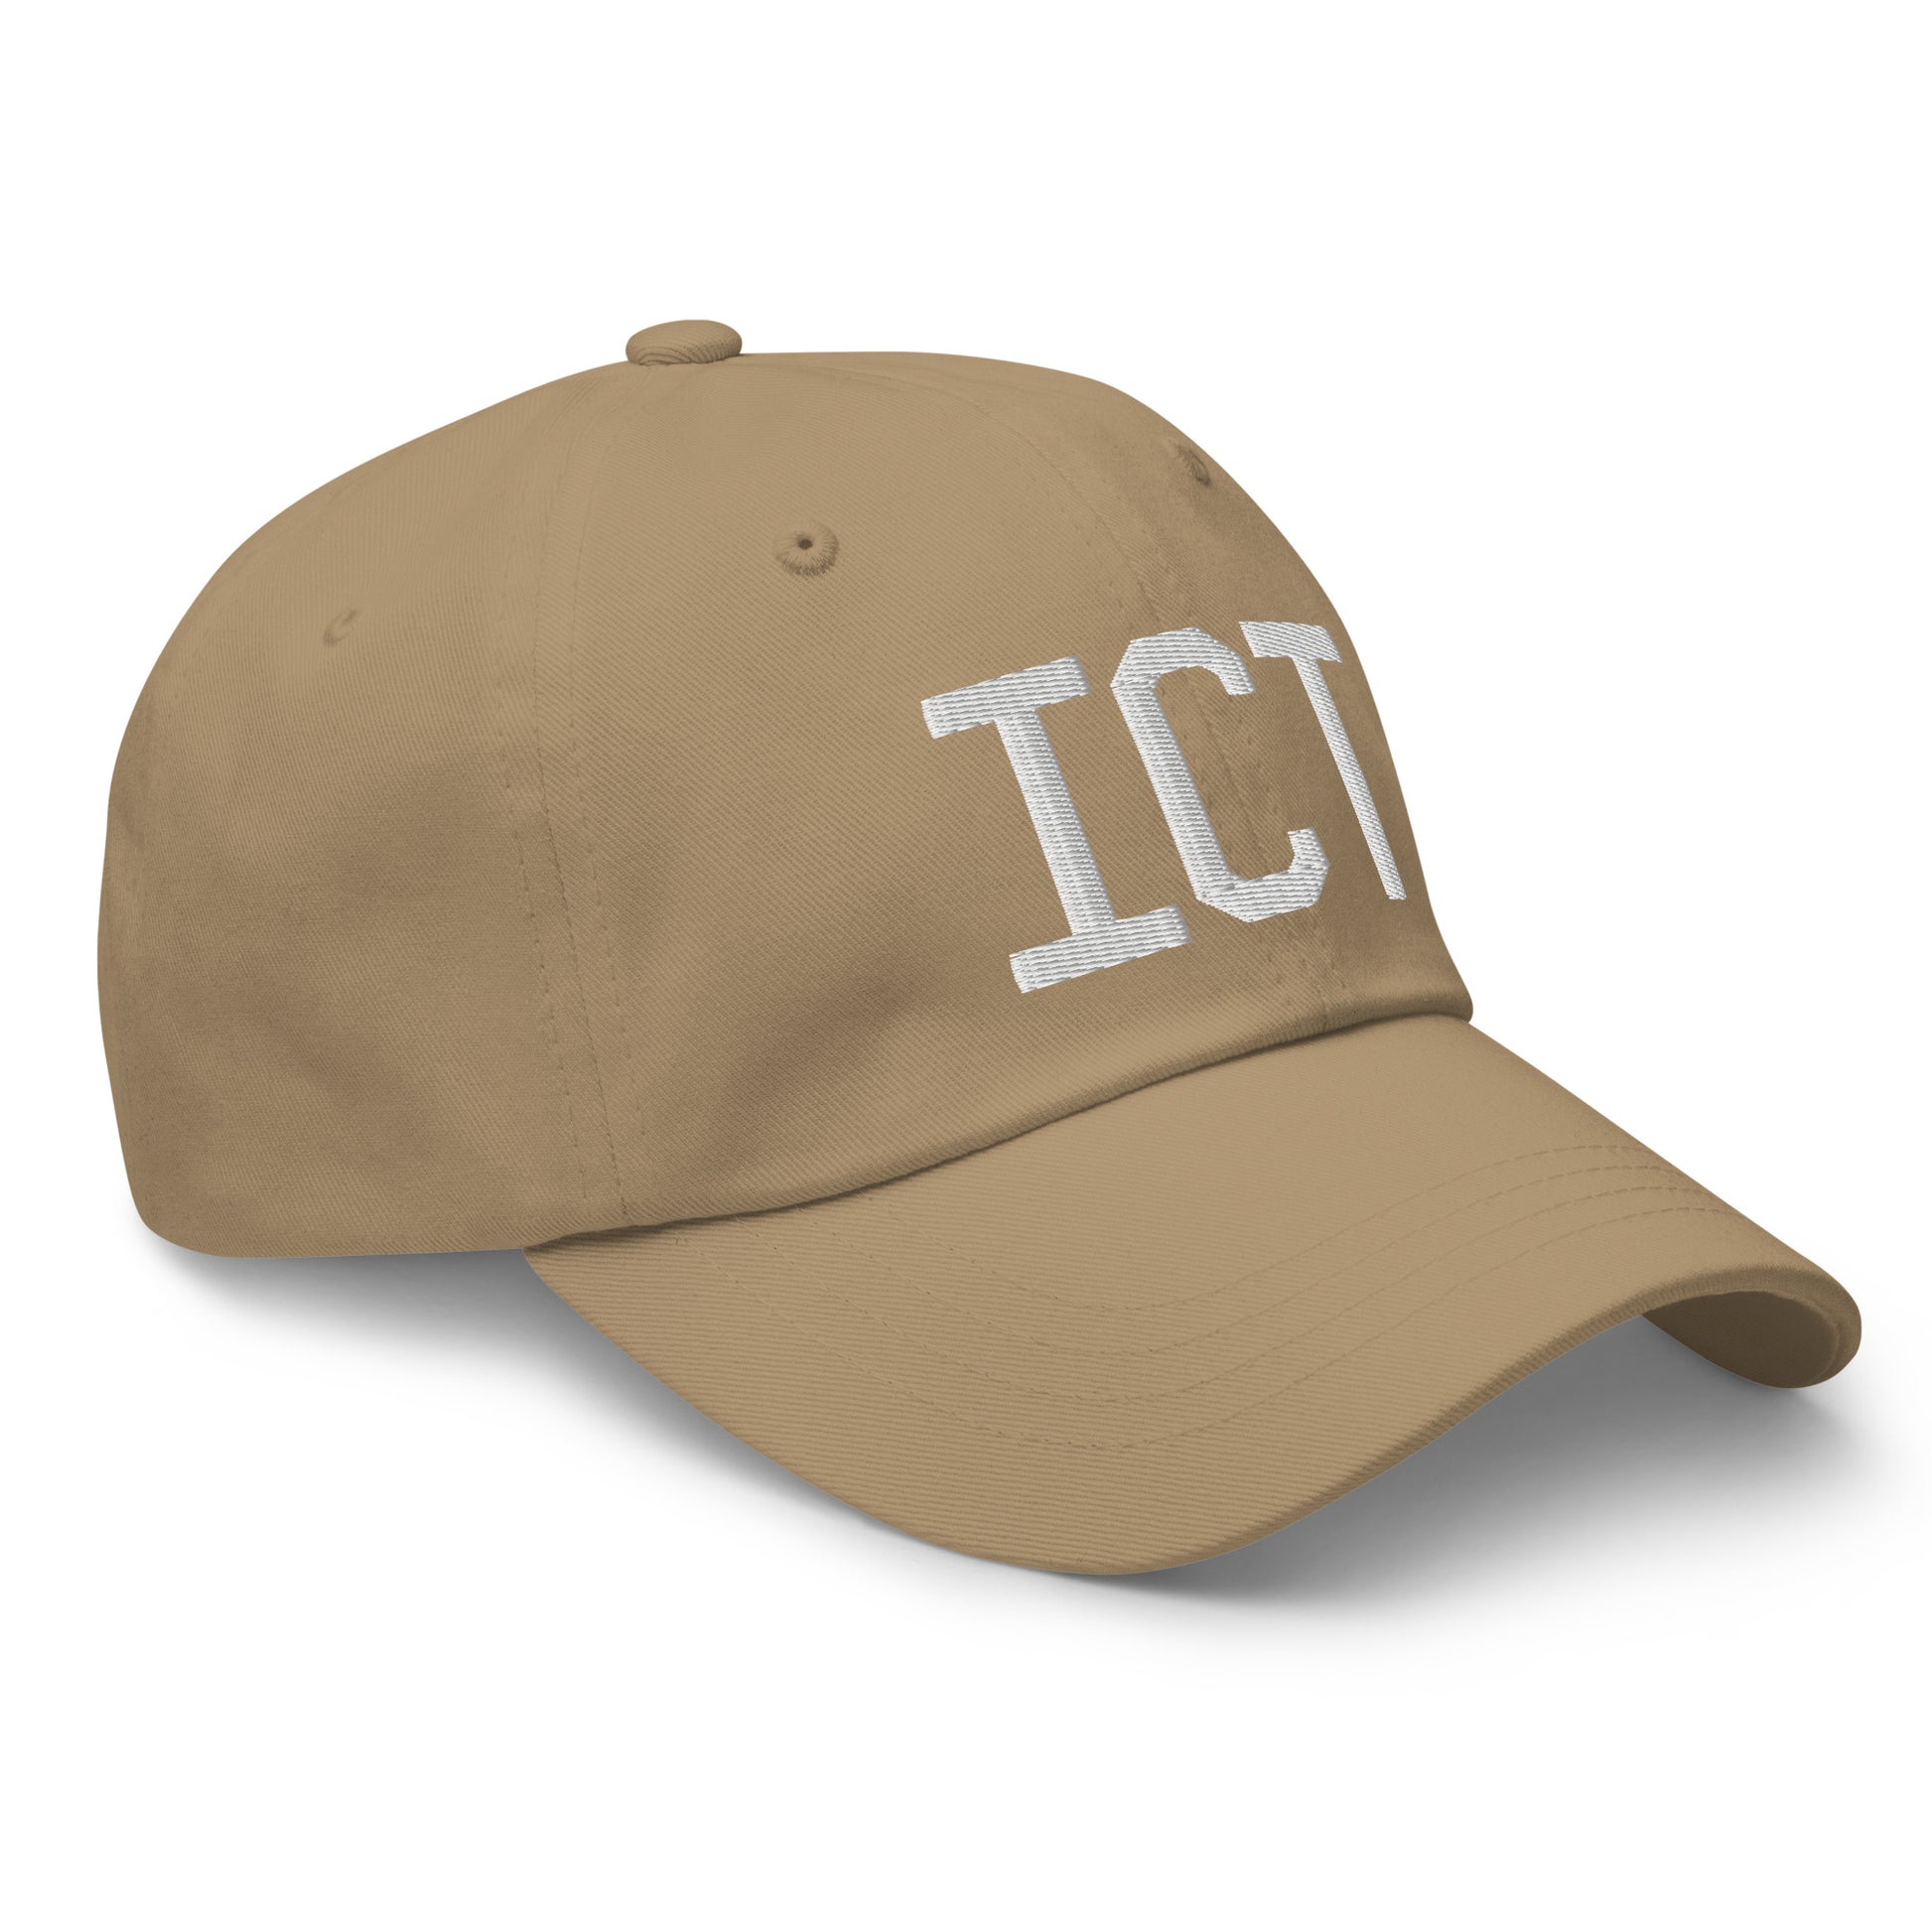 Airport Code Baseball Cap - White • ICT Wichita • YHM Designs - Image 23